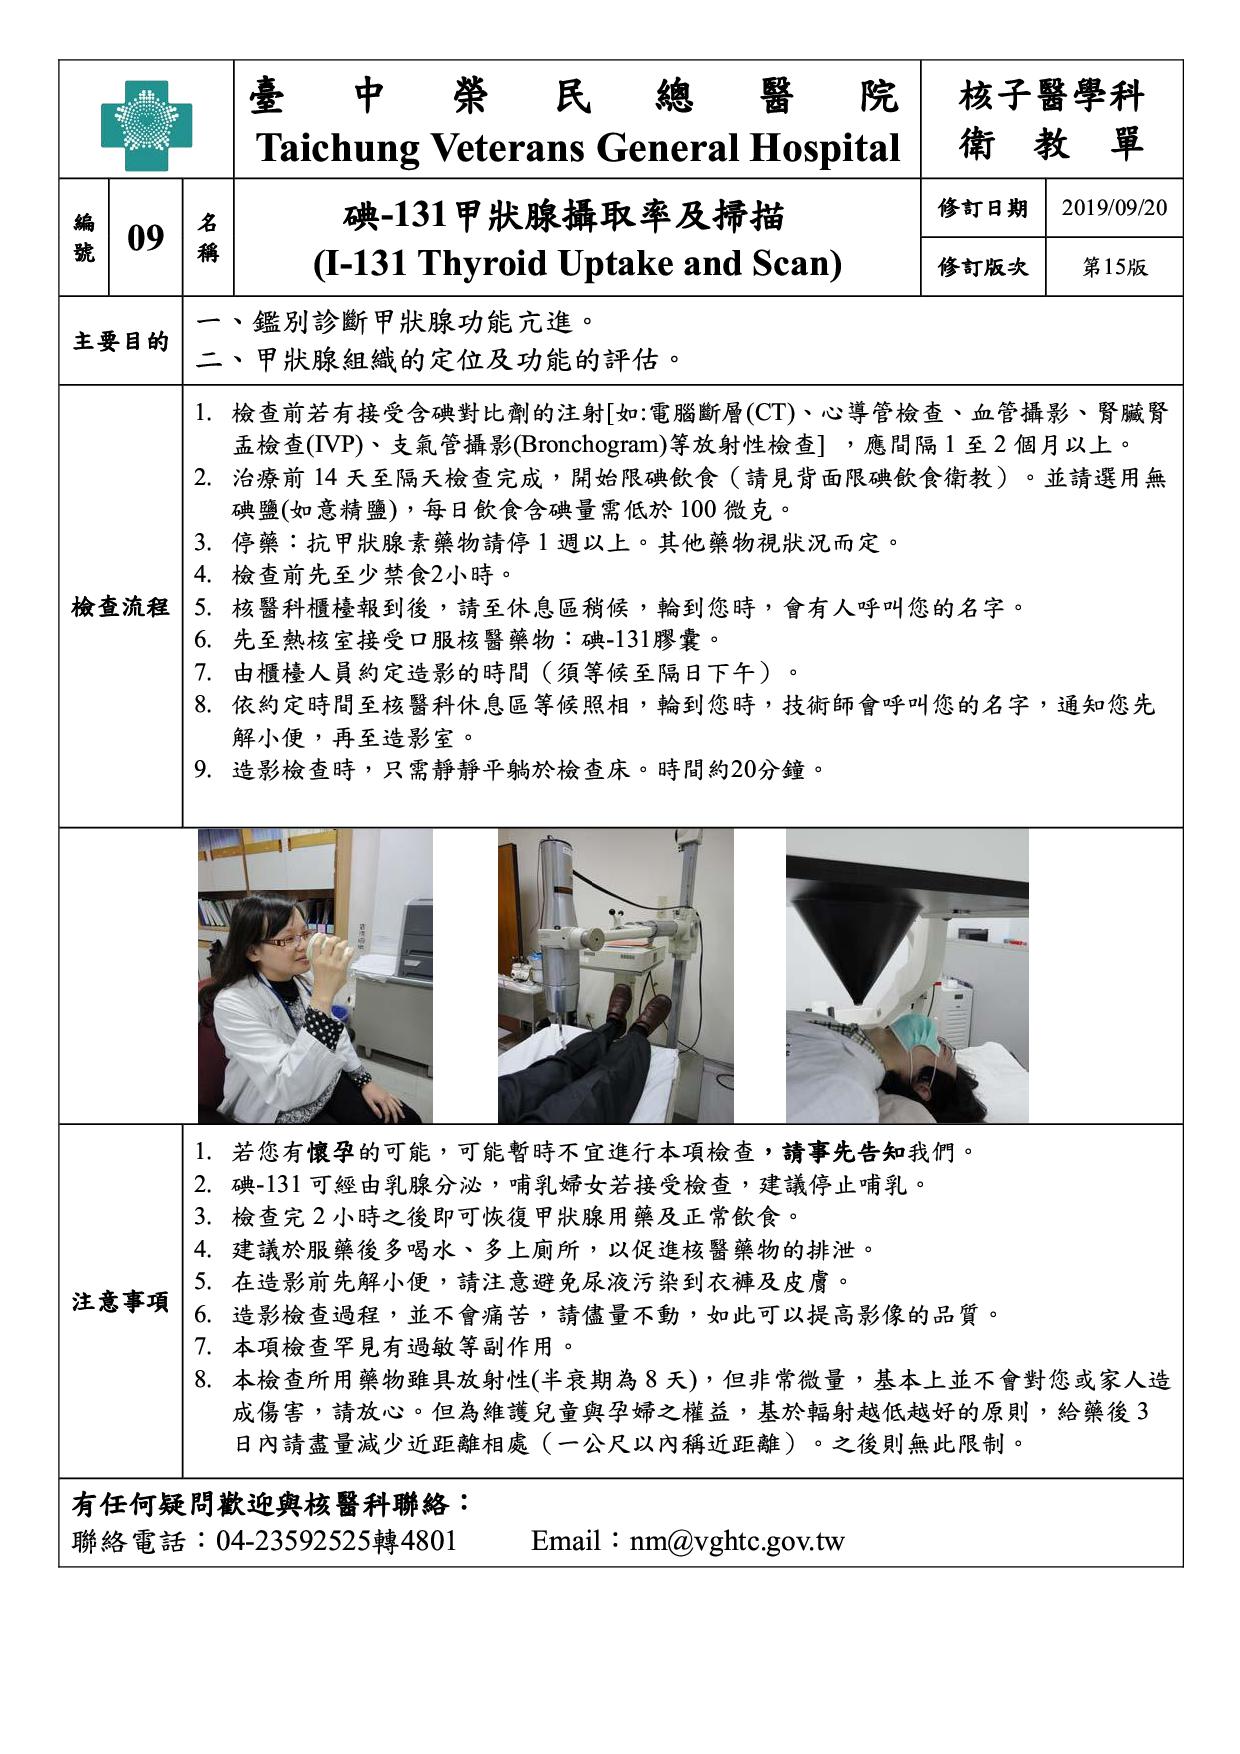 衛-09-碘-131甲狀腺攝取率及掃描(15)(20190920)1